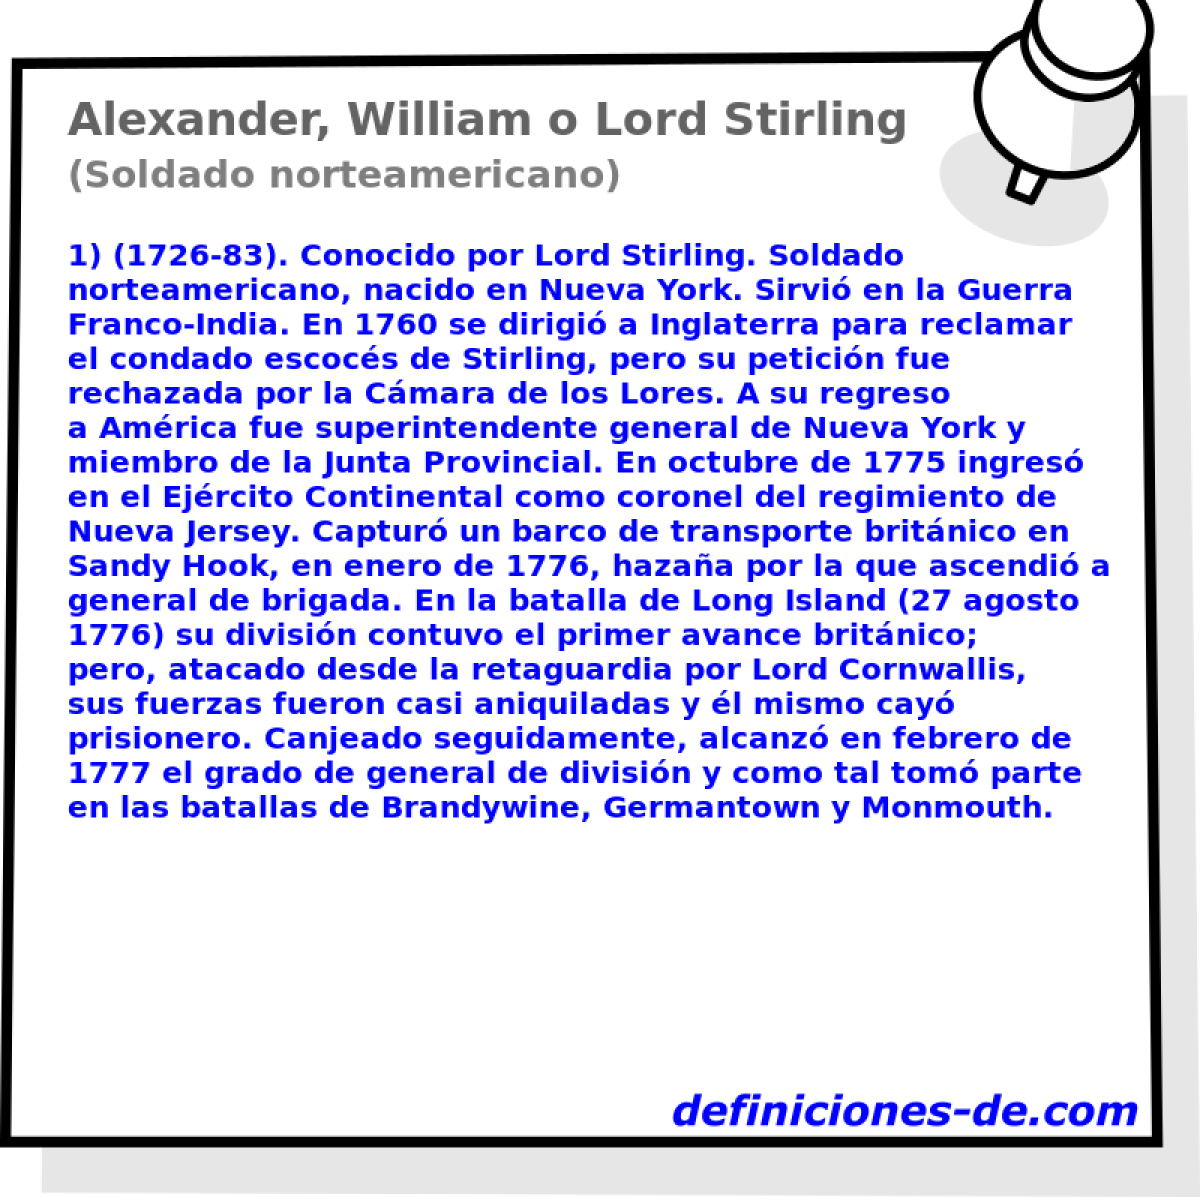 Alexander, William o Lord Stirling (Soldado norteamericano)